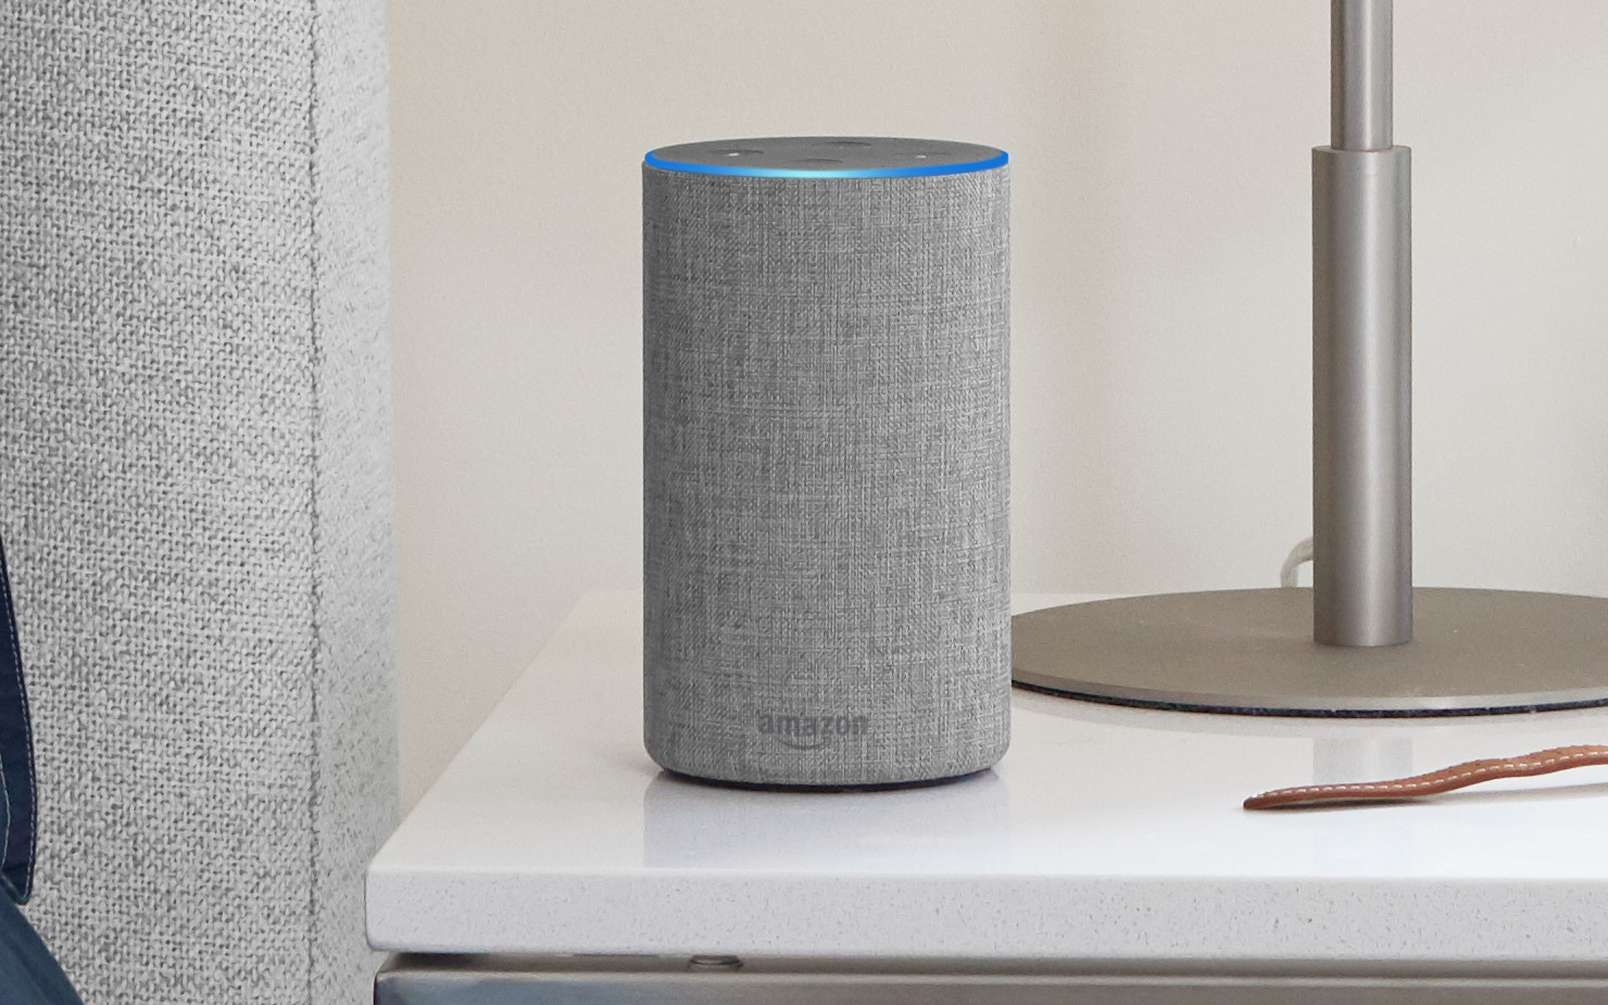 L’assistant vocal Amazon Alexa pourrait bientôt reproduire la voix d’un proche défunt. © Amazon